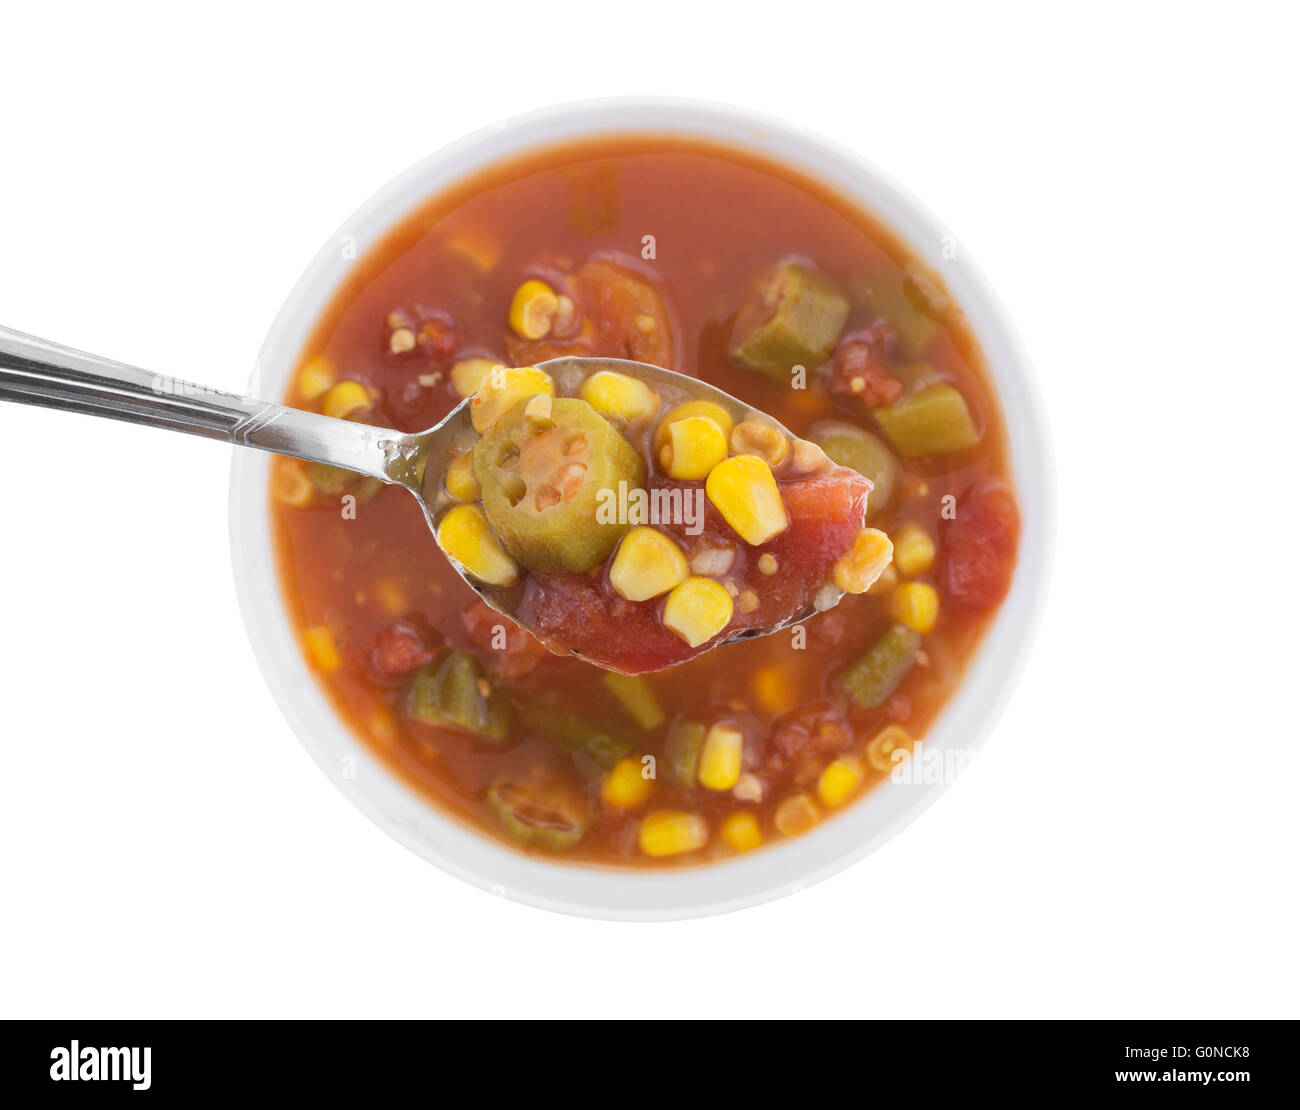 Vue de dessus une cuillerée de maïs, le gombo et les tomates avec le reste des légumes dans de l'eau avec les assaisonnements Banque D'Images